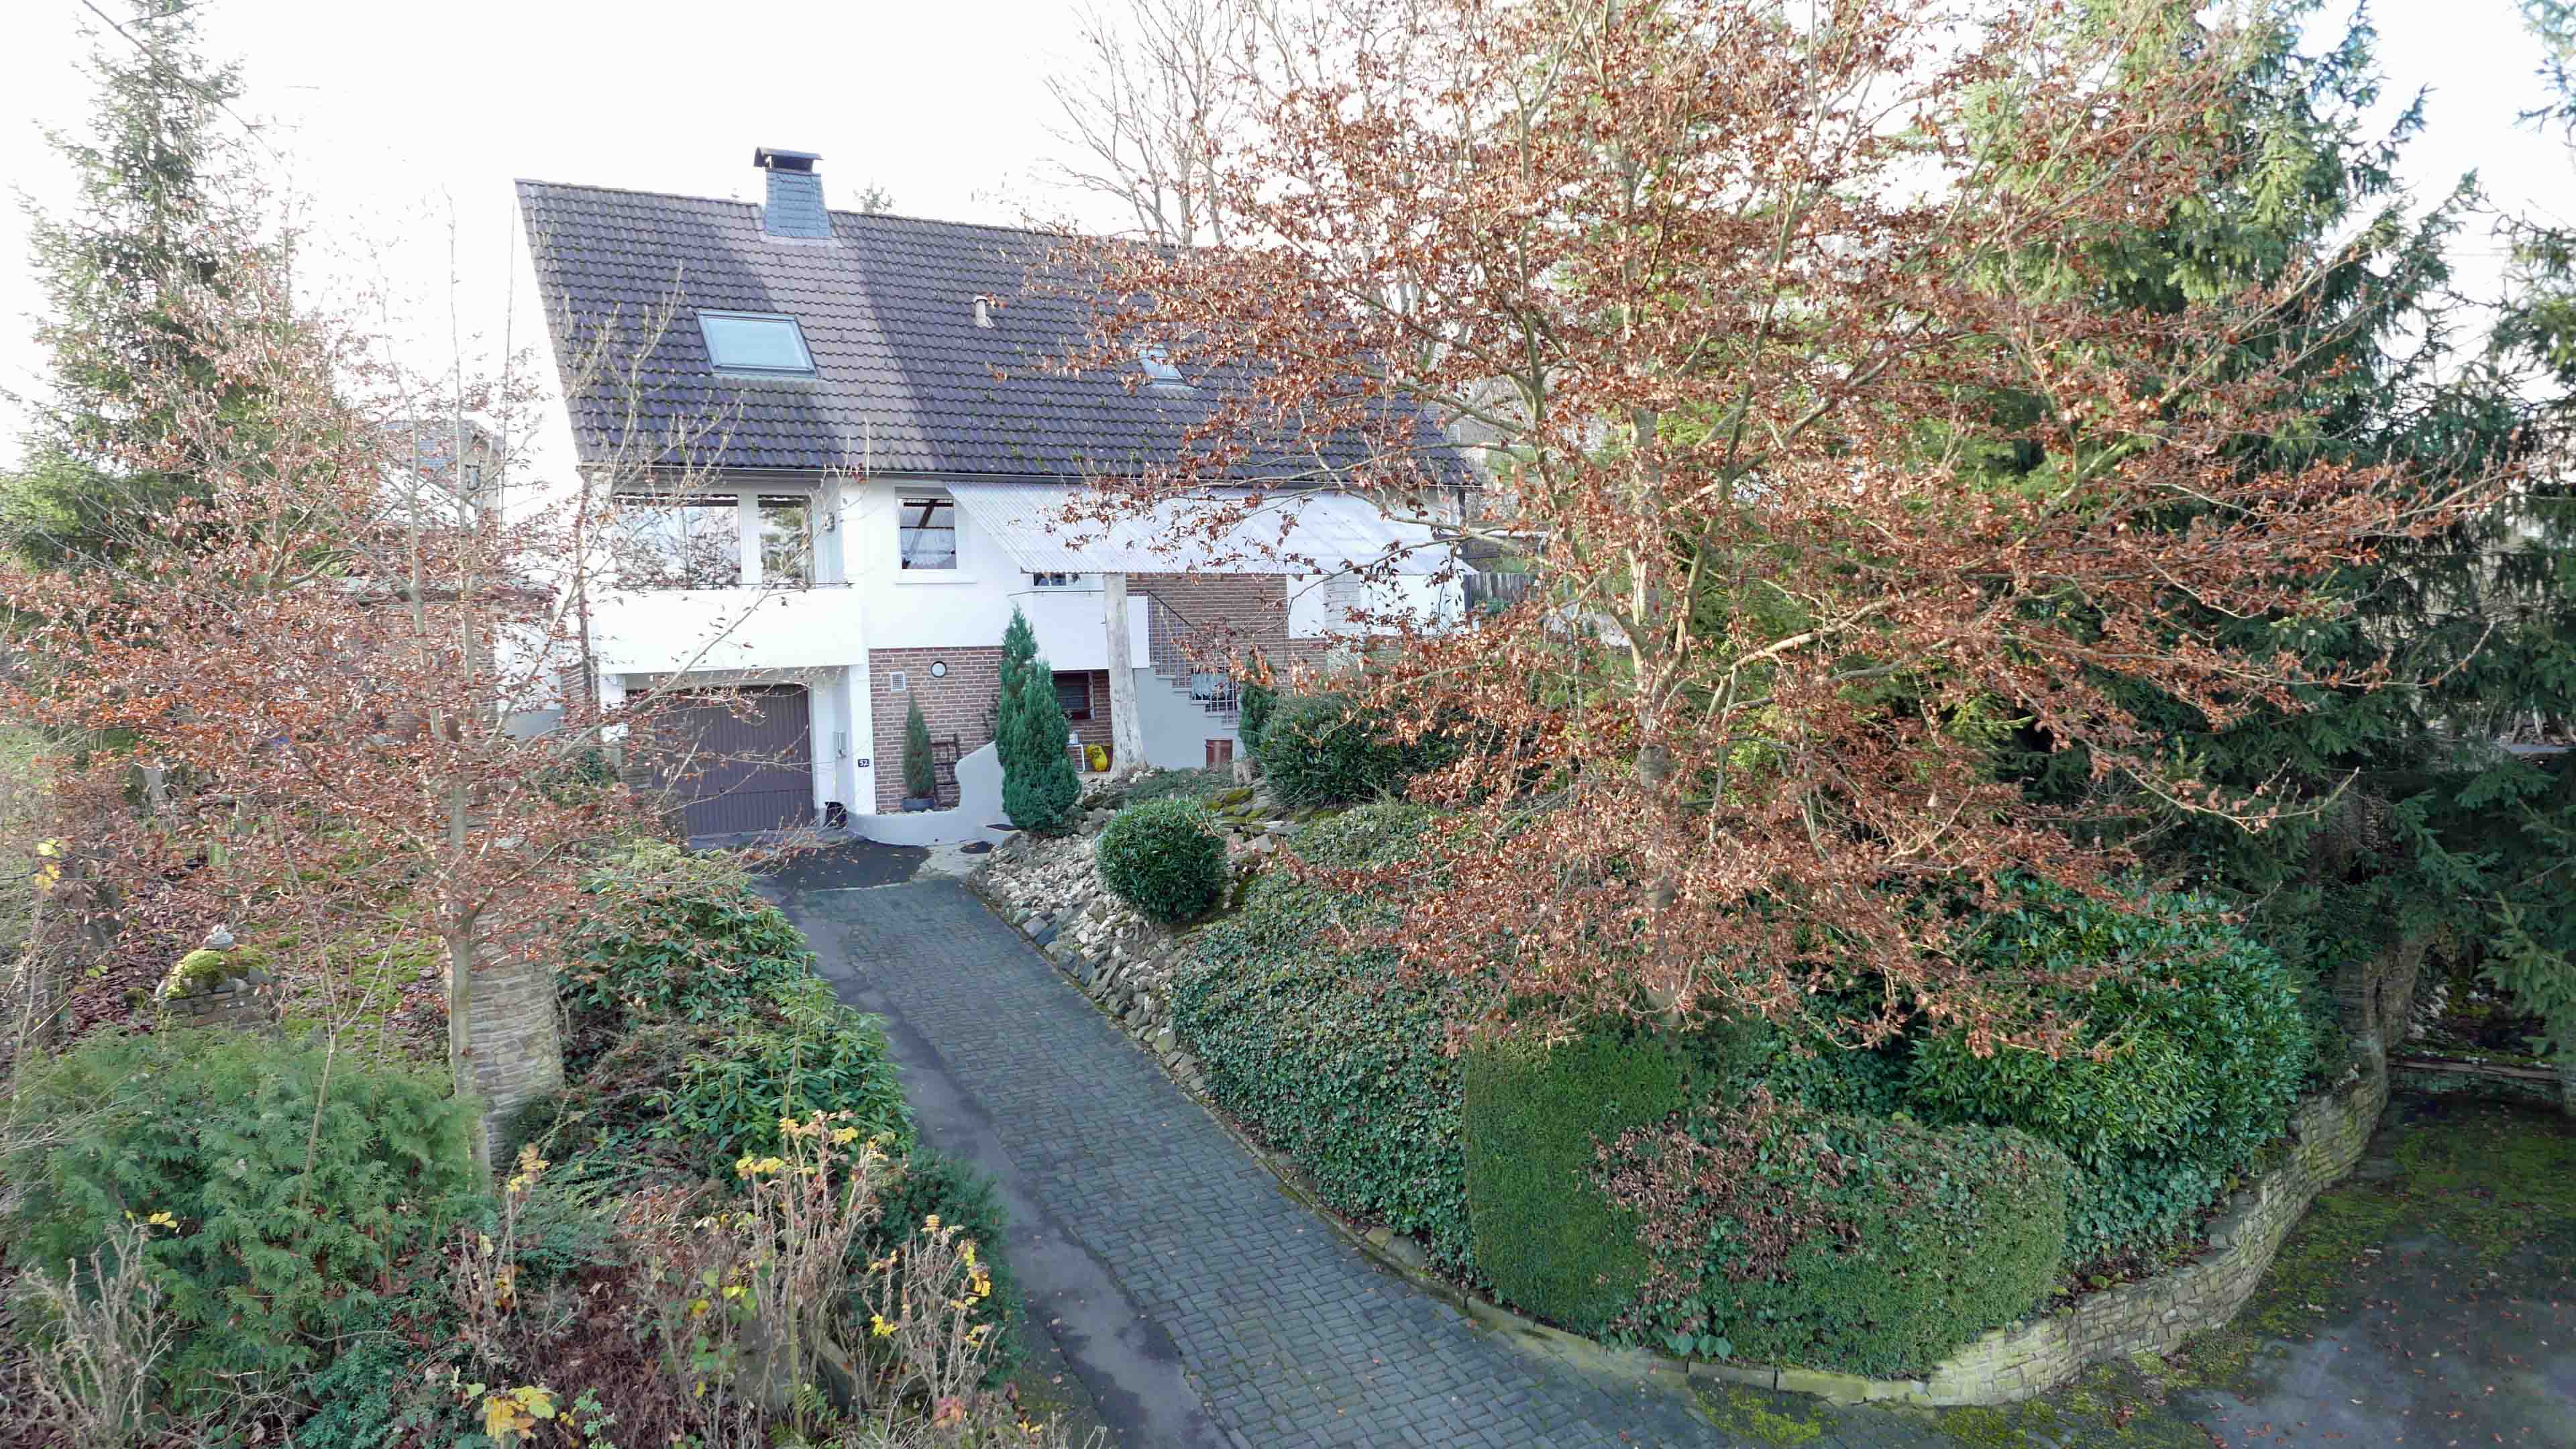 Morsbach: Gepflegtes 1 bis 2-Familienhaus, Frontseite. Das Dach wurde 2004 modernisiert